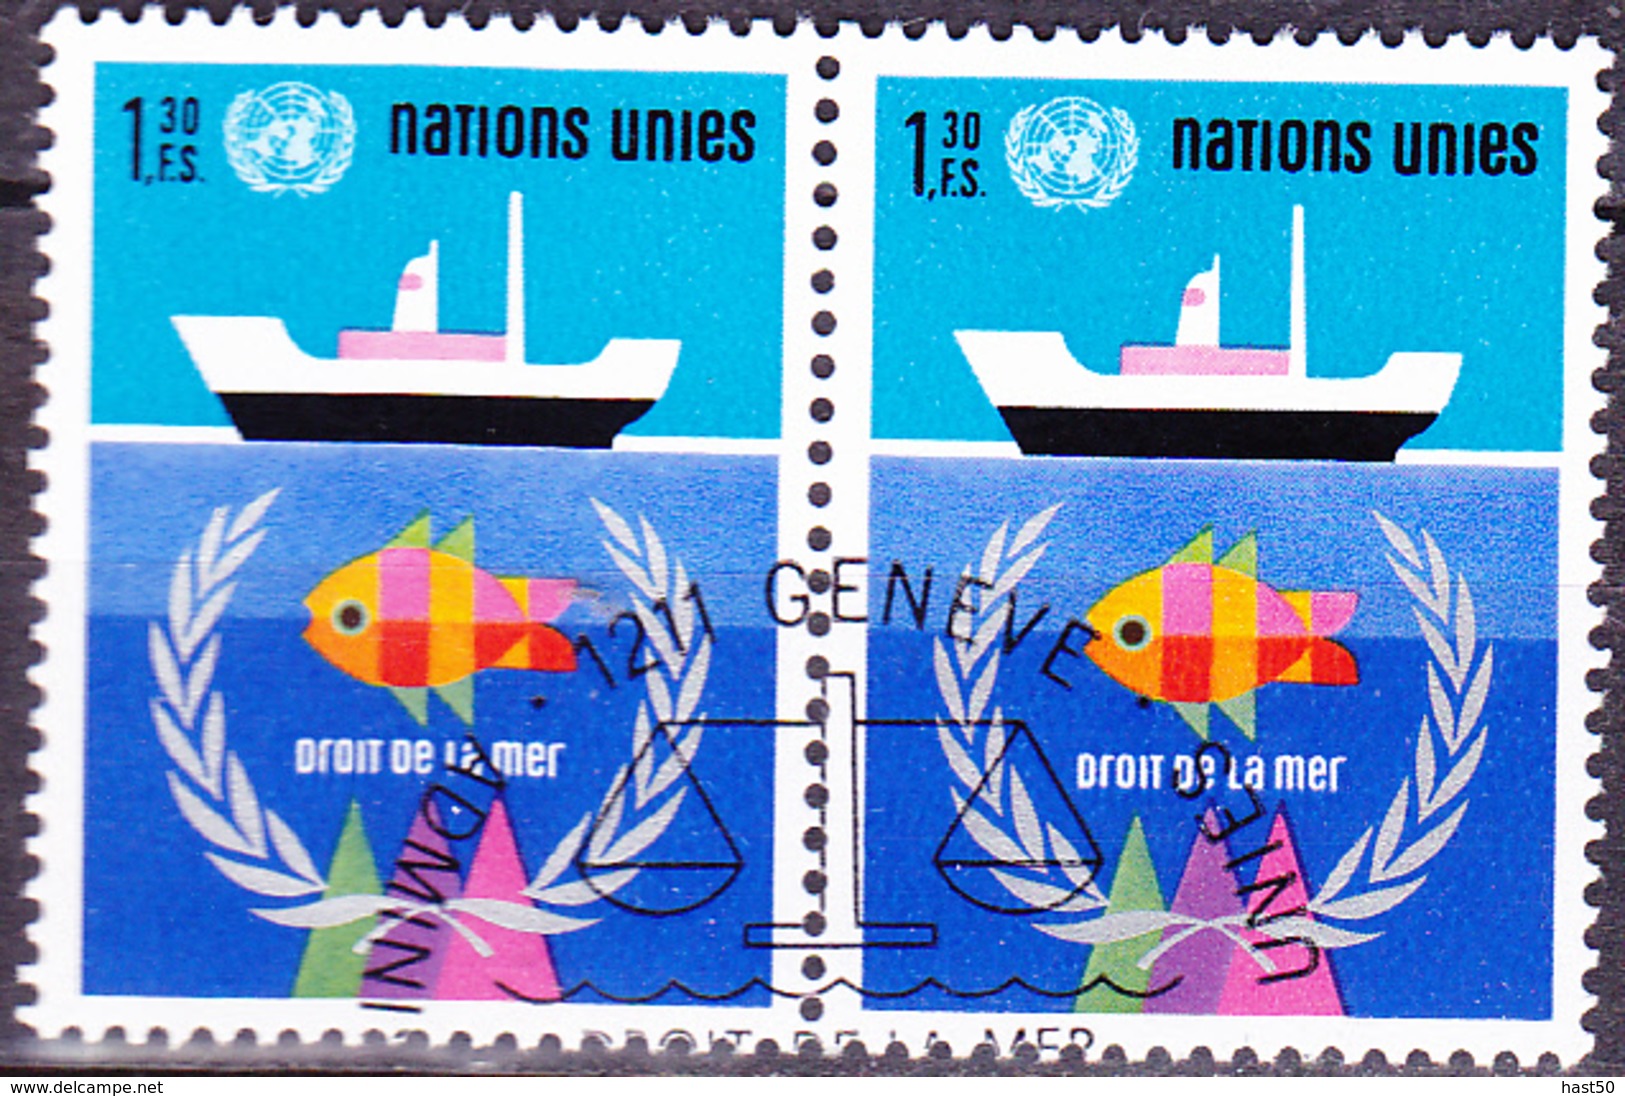 UNO Genf Geneva Geneve - Seerechtskonferenz Der UN (MiNr. 45) 1974 - Gest Used Obl - Gebruikt